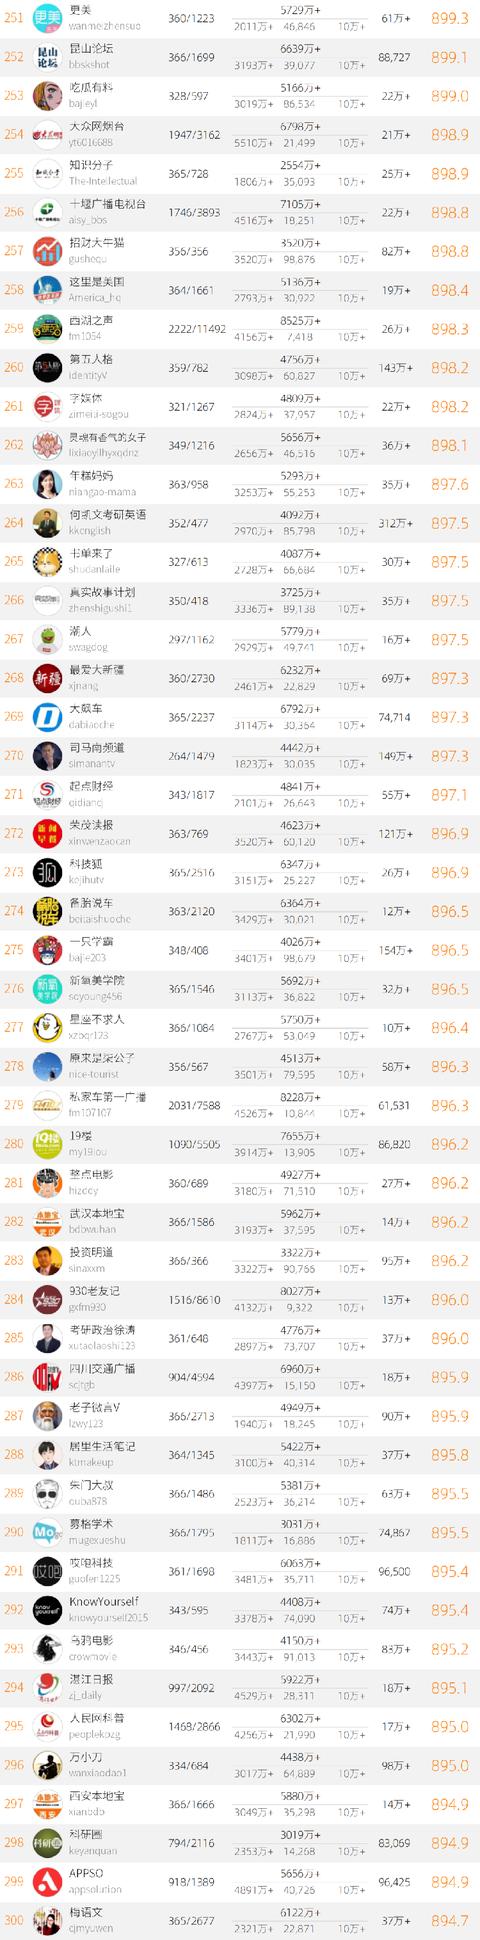 2020年中国微信500强榜单公布 大众网淄博位列全国154名-6.jpg